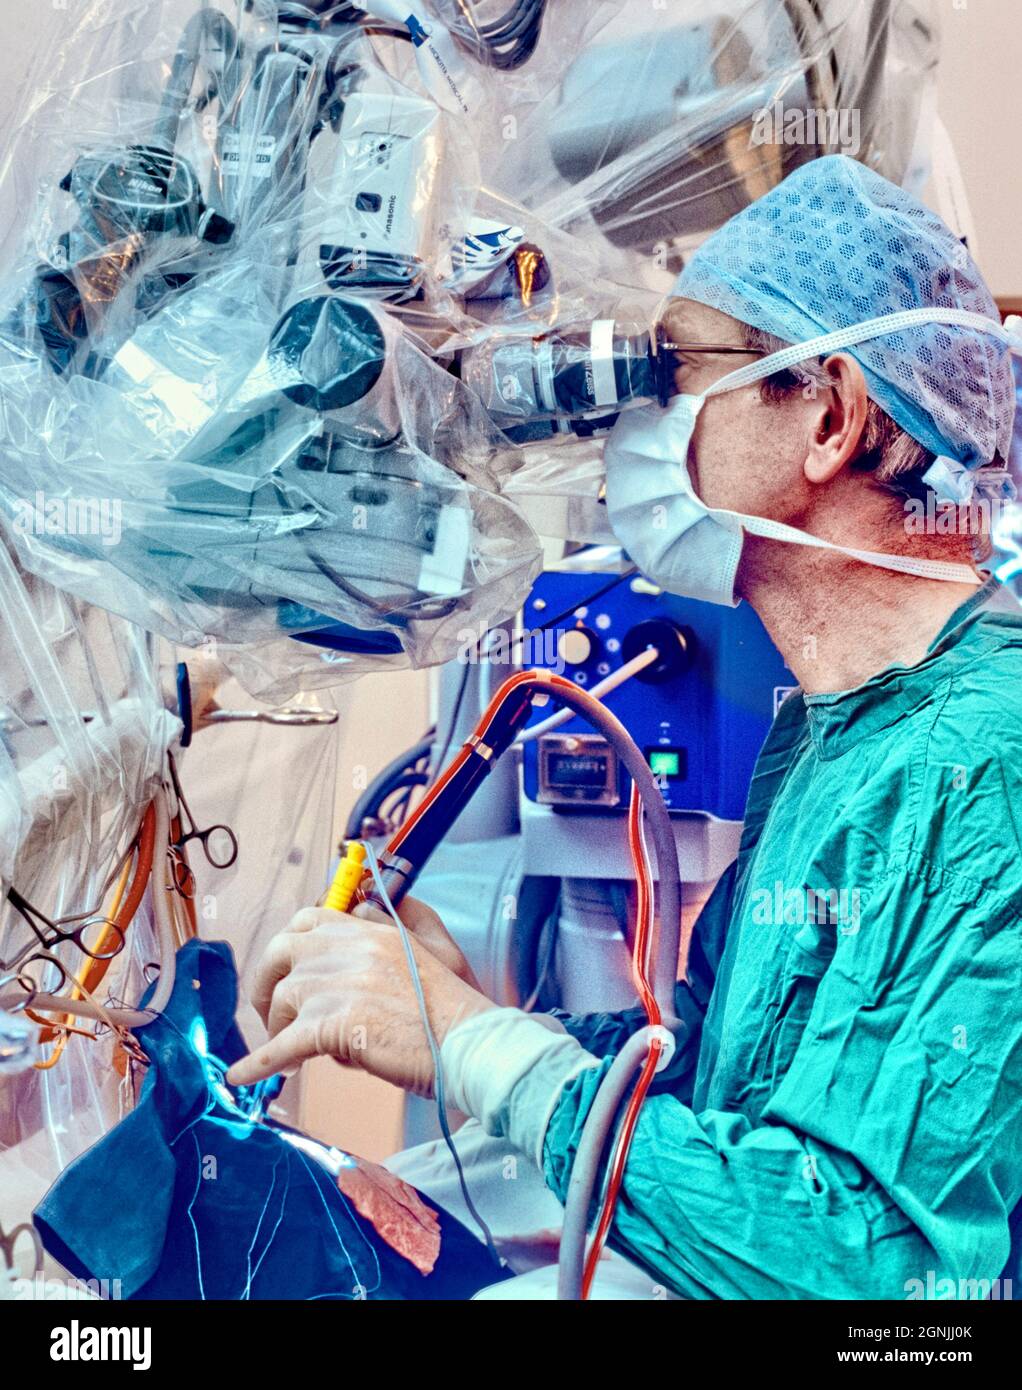 El neurocirujano realiza una microcirugía para la extirpación del tumor cerebral. Foto de stock